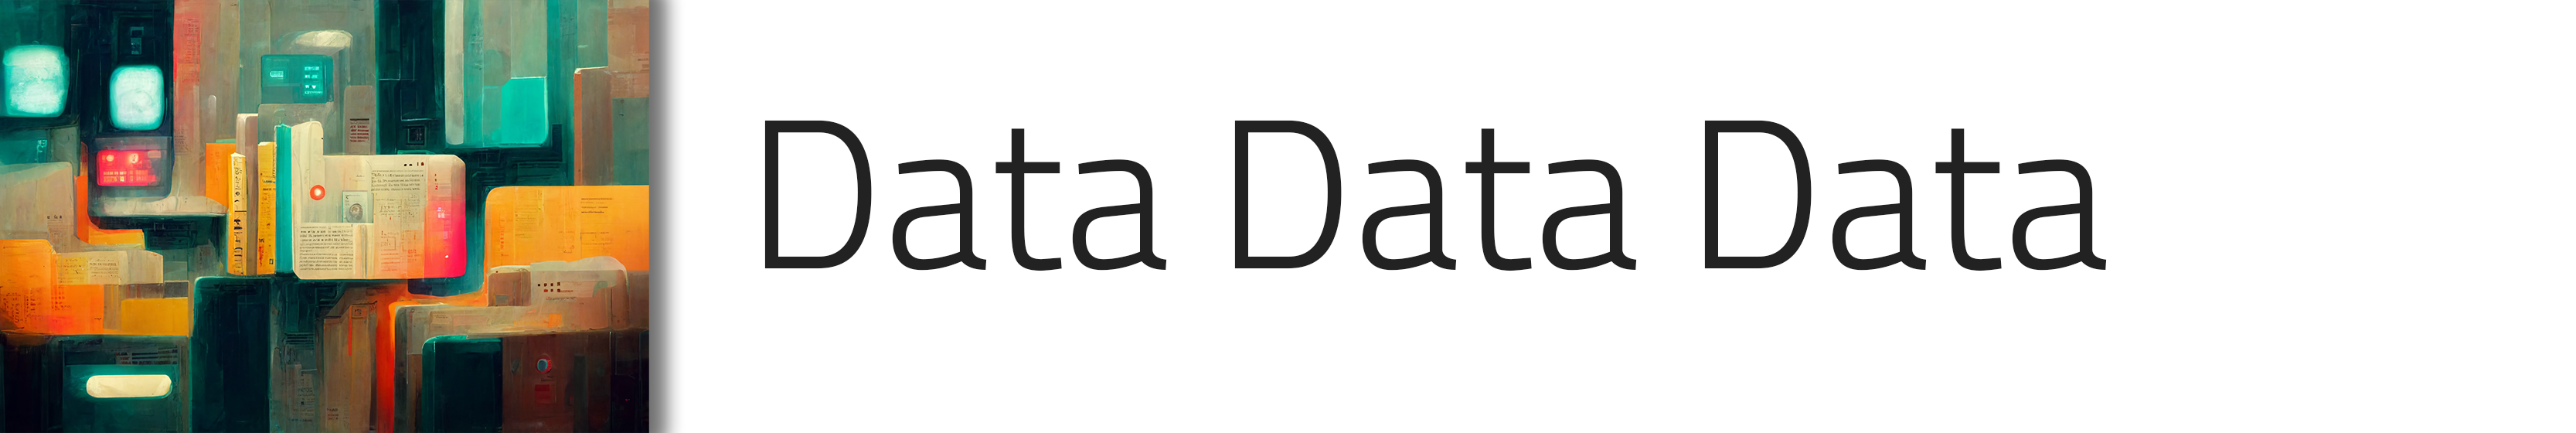 Data data data